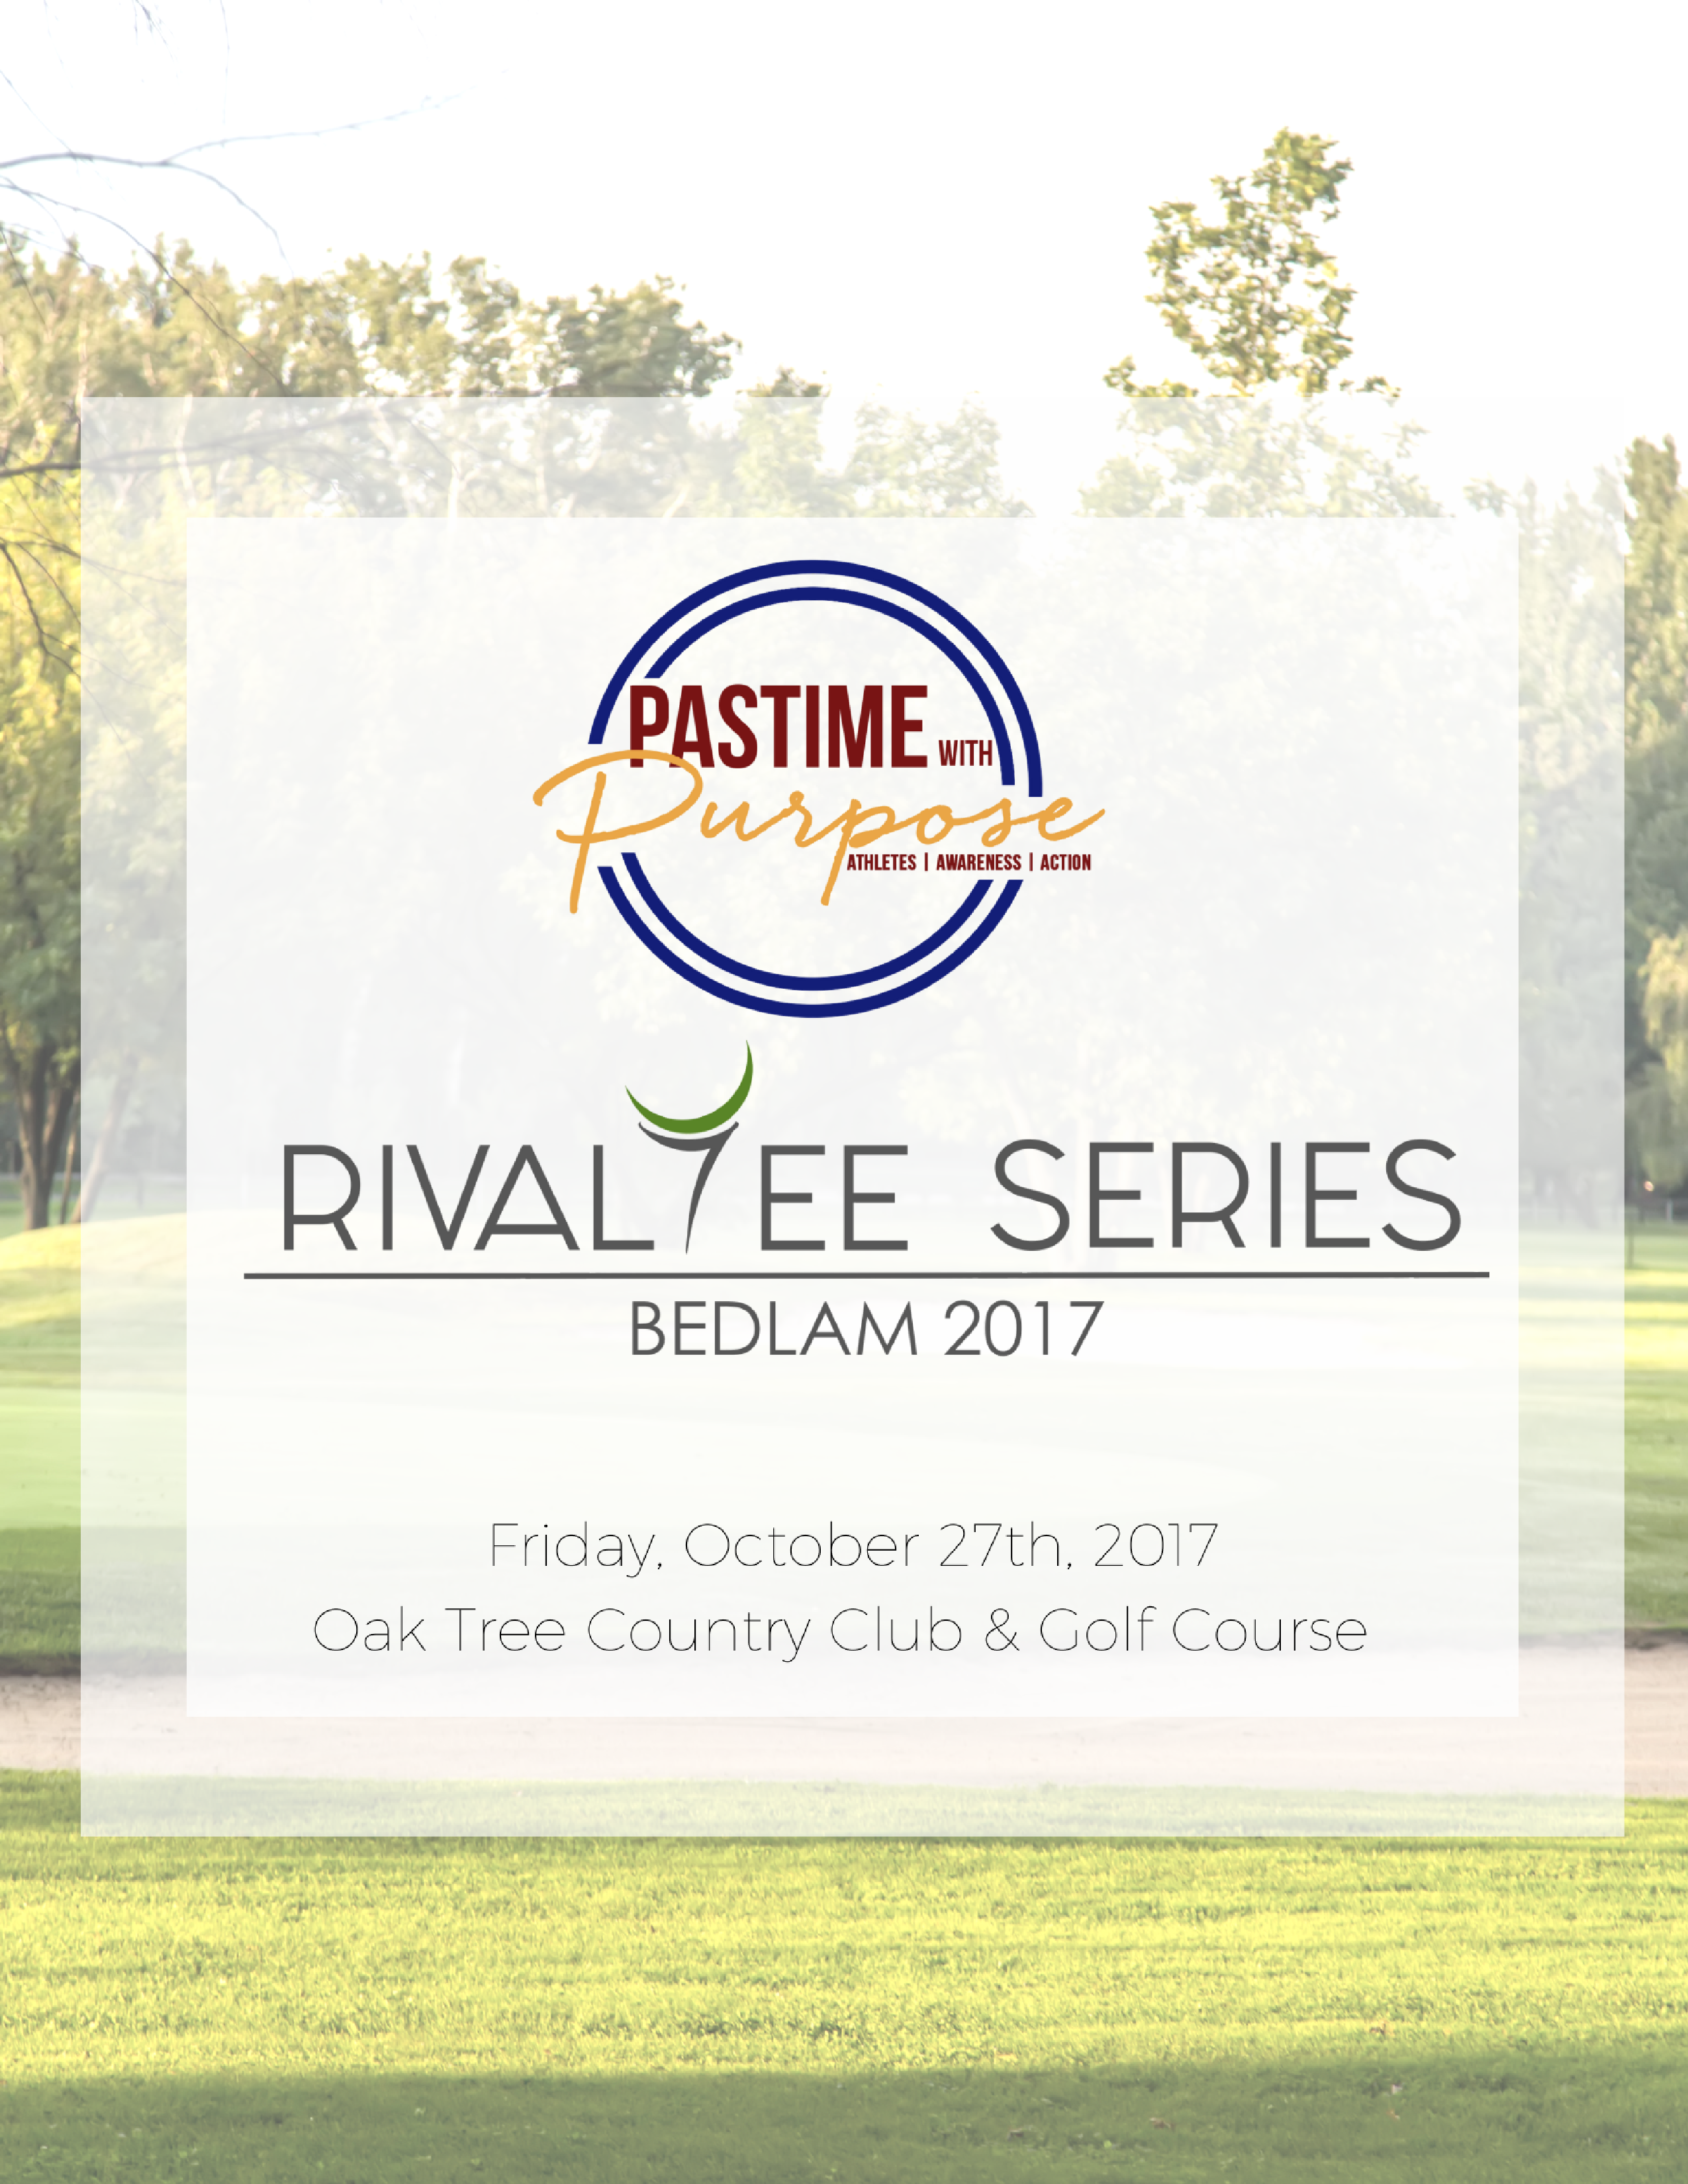 RivalTee Series: Bedlam Golf Tournament